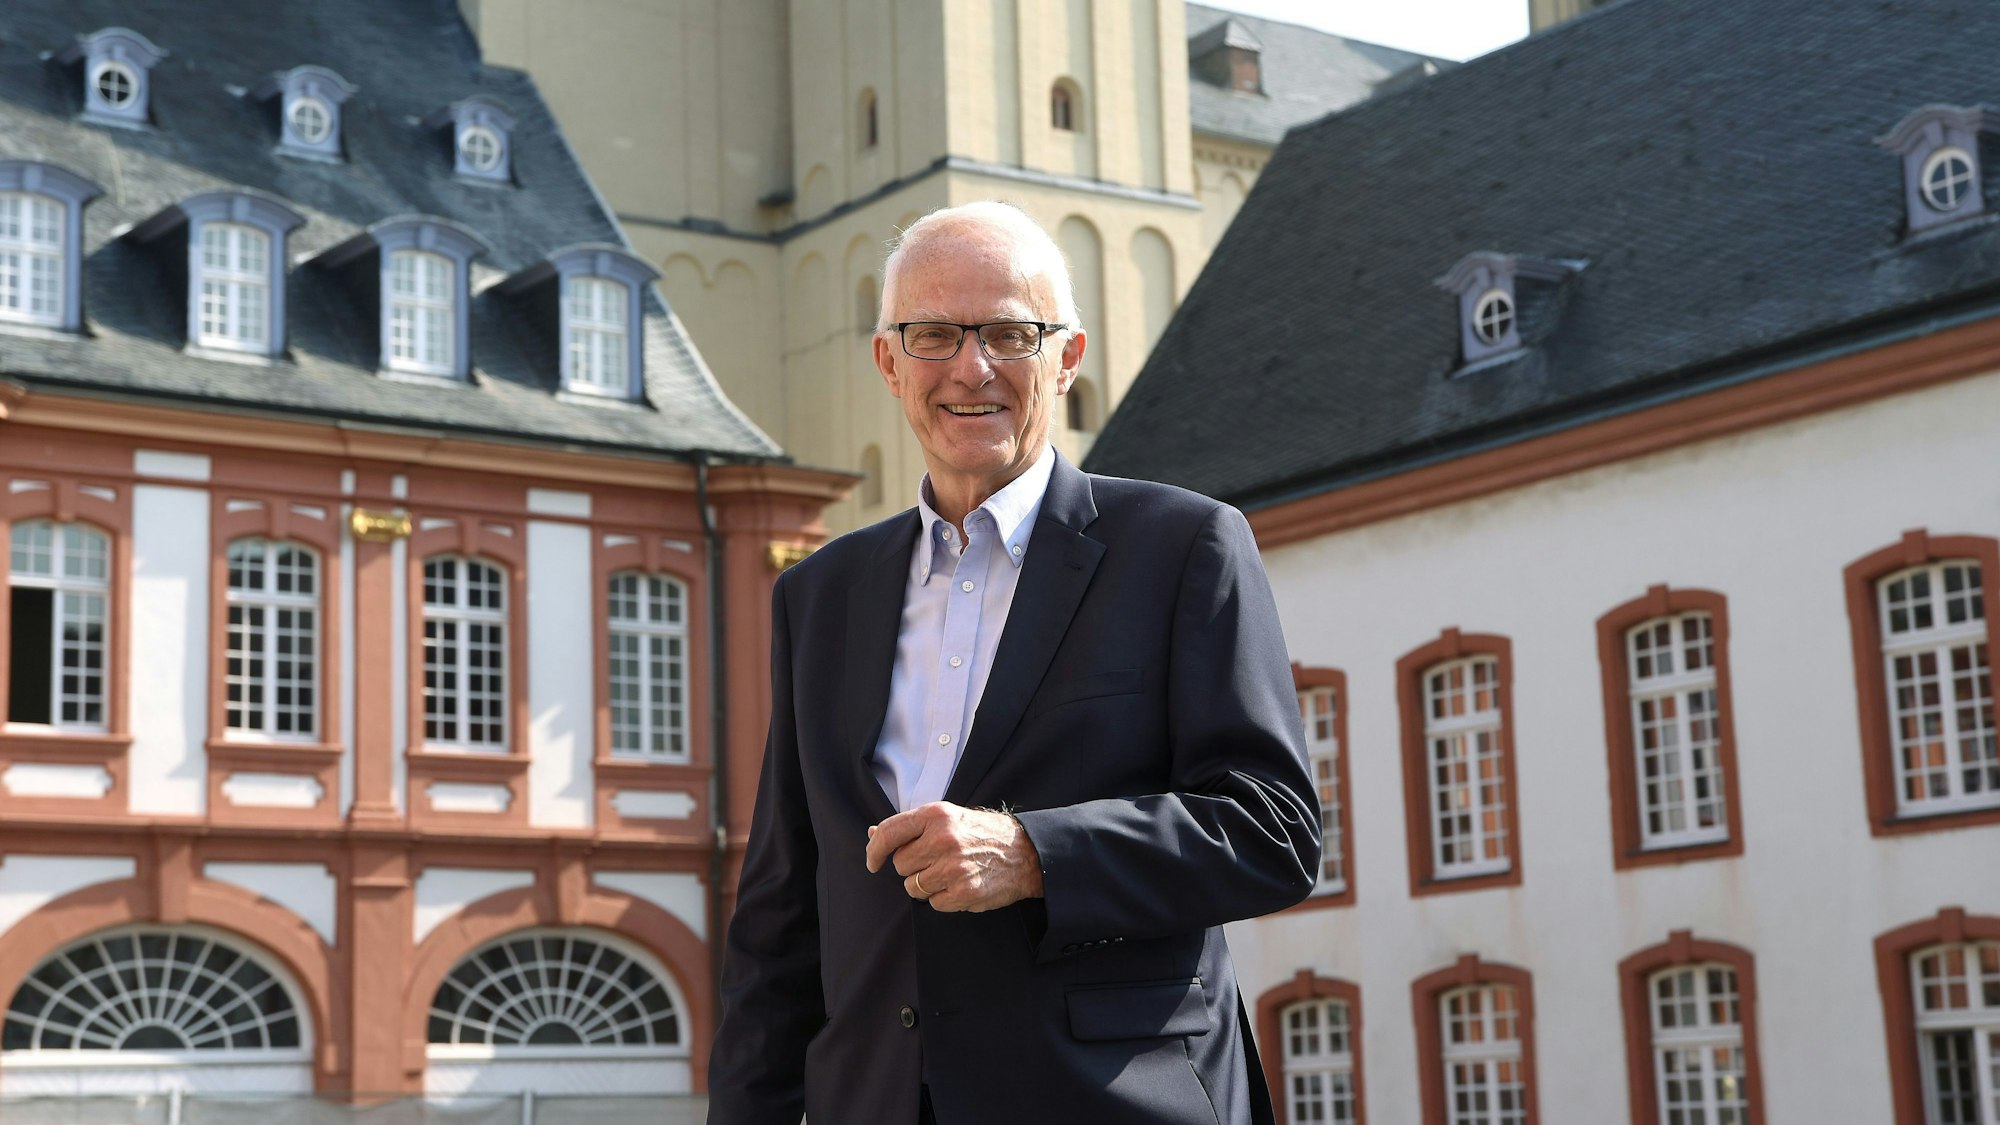 Ministerpräsident a.D. Prof. Dr. Jürgen Rüttgers steht vor mehreren Gebäuden und lächelt in die Kamera.